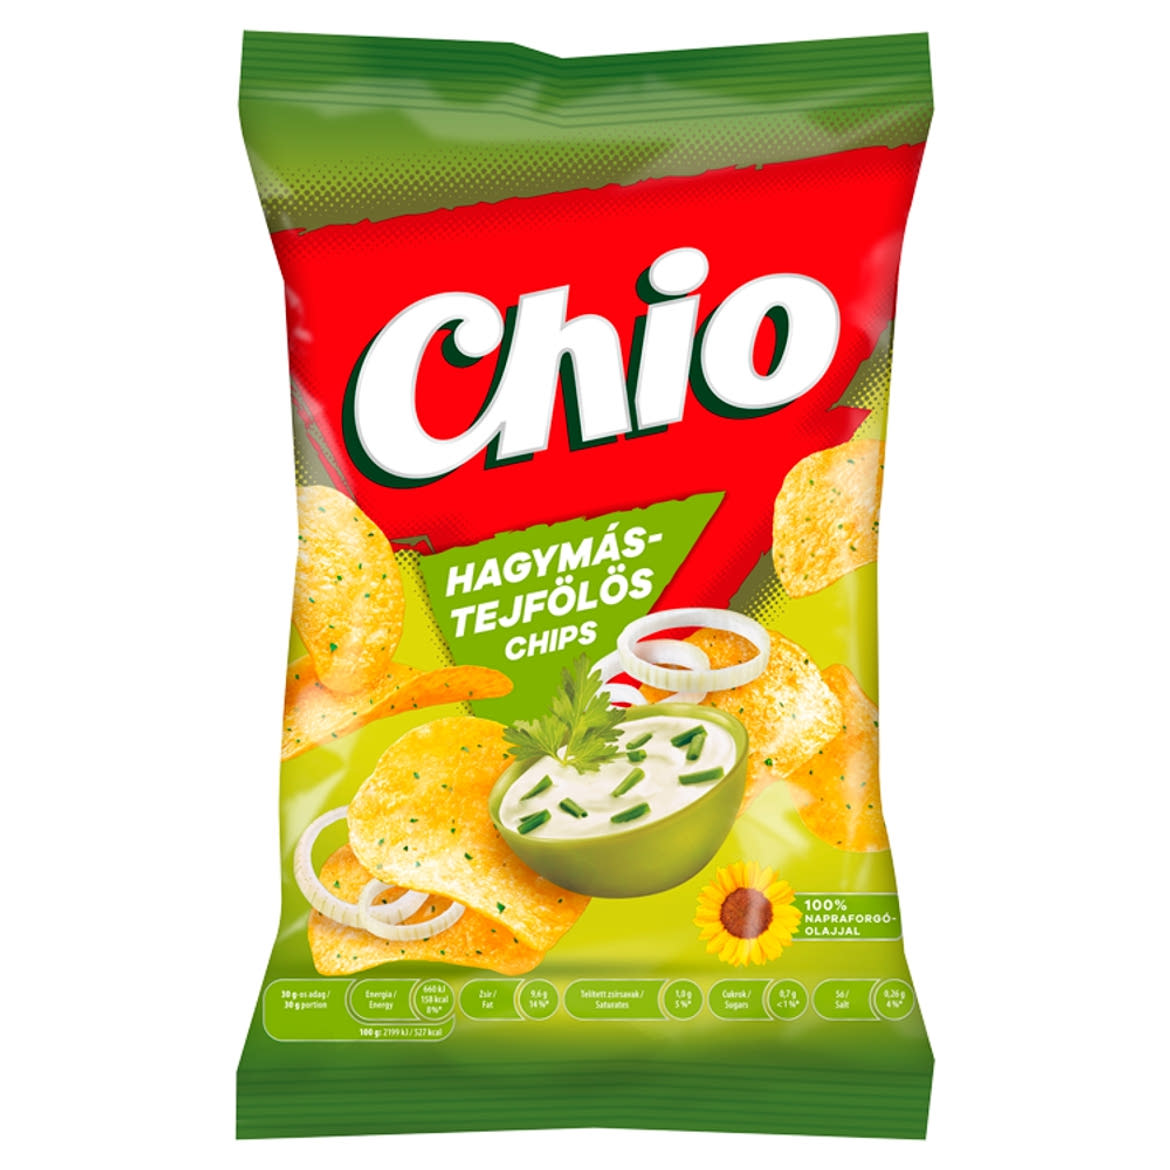 Chio hagymÃ¡s-tejfÃ¶lÃ¶s chips